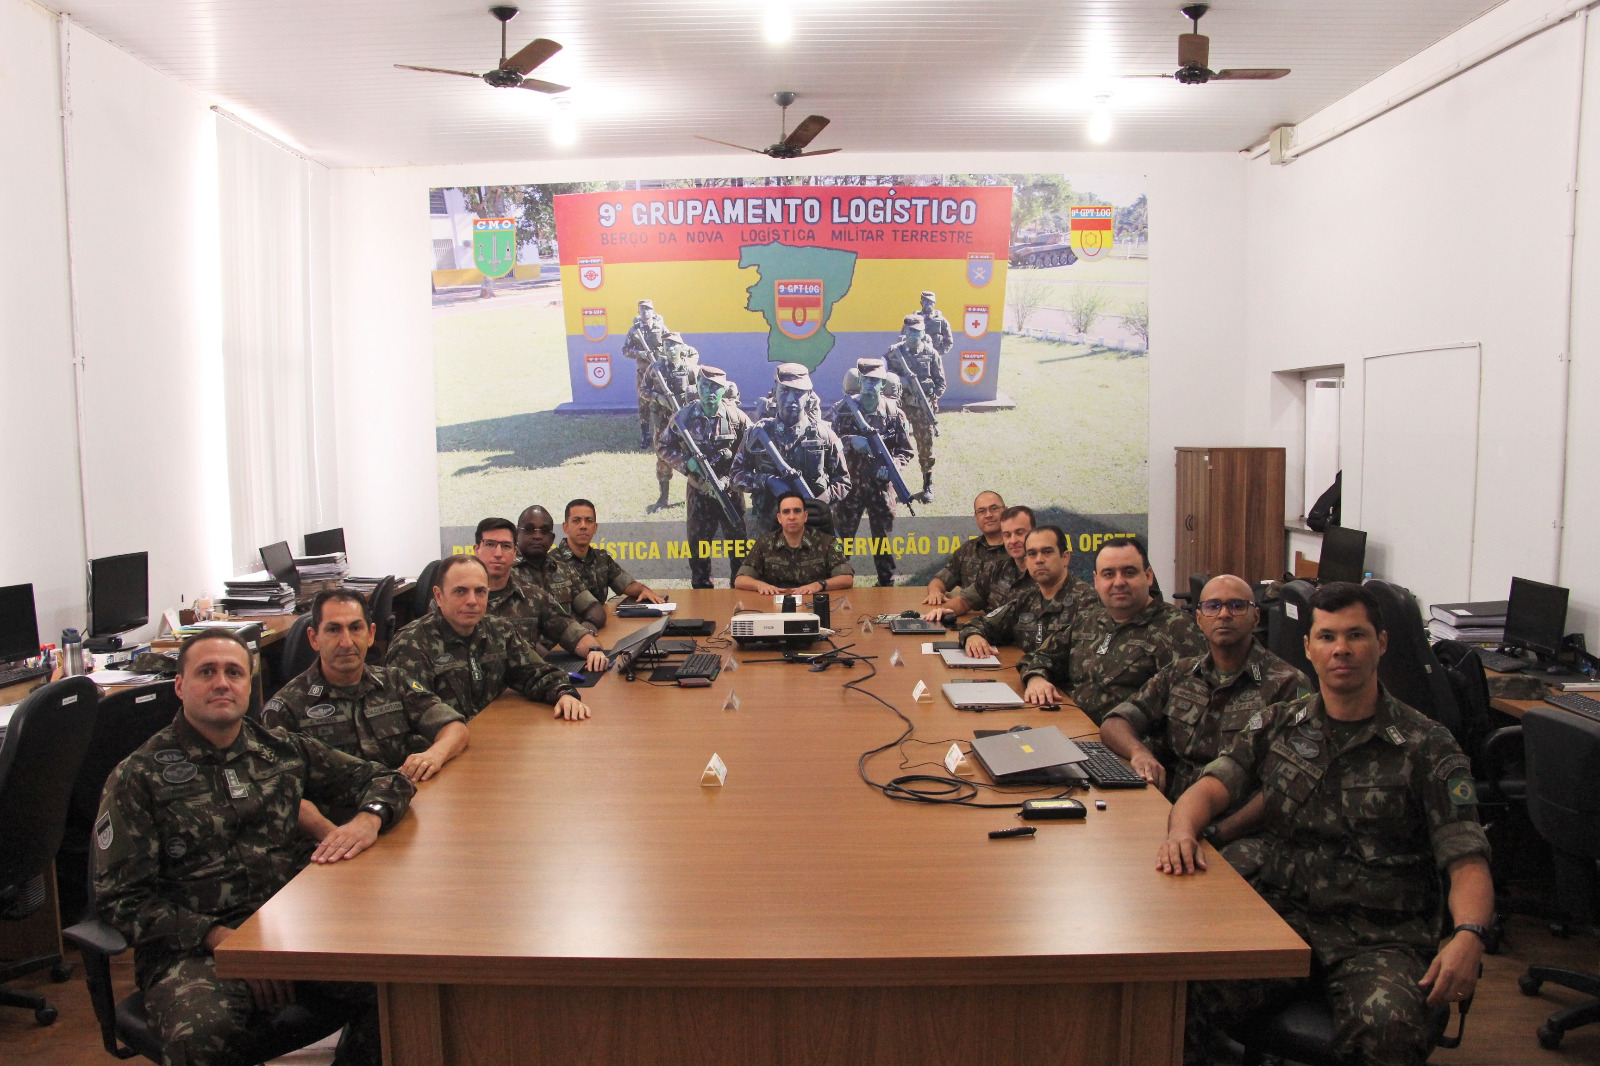 9º Gpt Log promove 5ª Reunião de Comando2